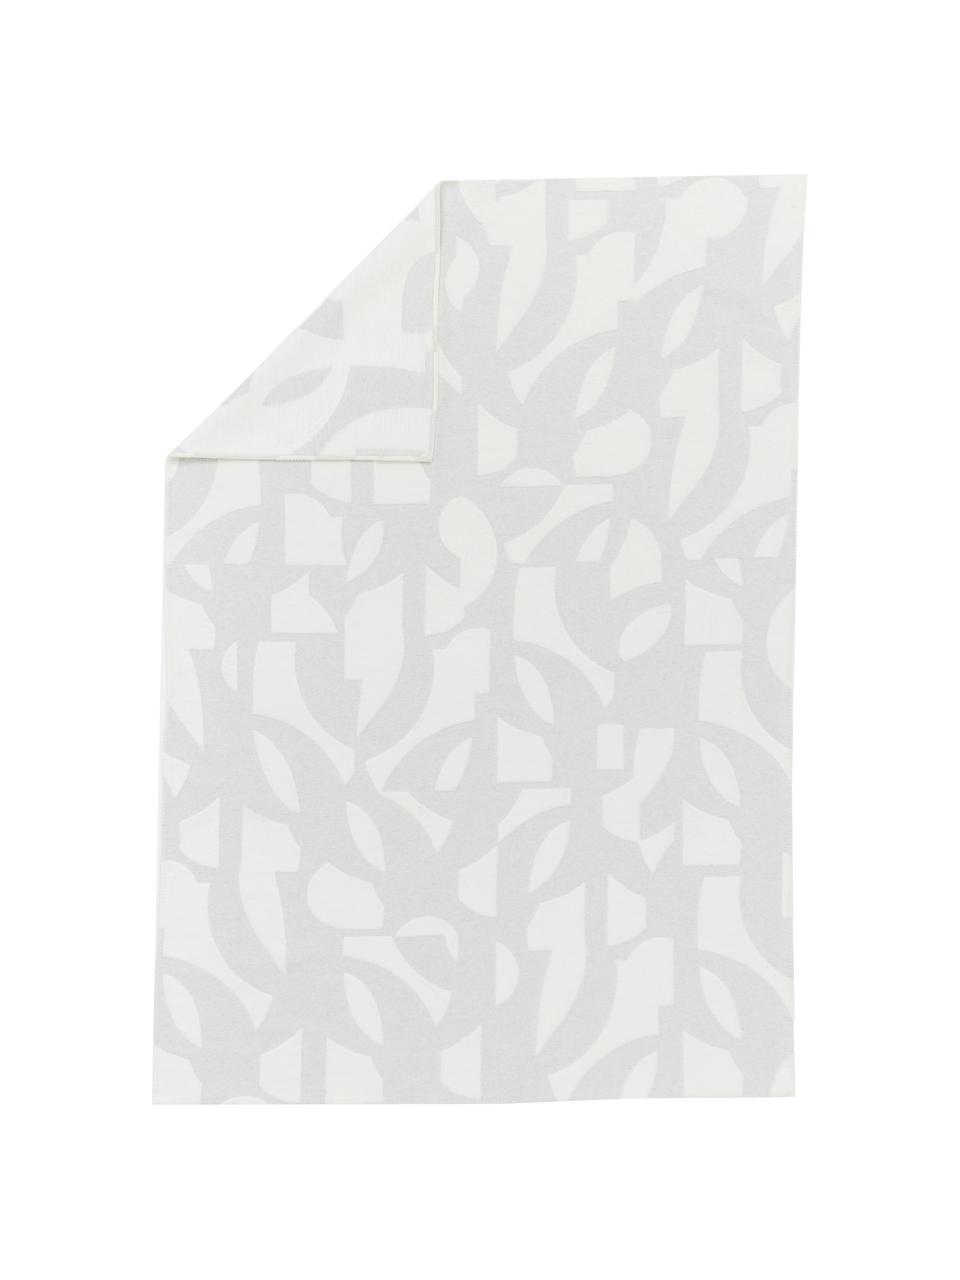 Flanelldecke Grafic in Grau/Weiß mit Muster und Ziernaht, 85% Baumwolle, 15% Polyacryl, Grau, Weiß, 130 x 200 cm